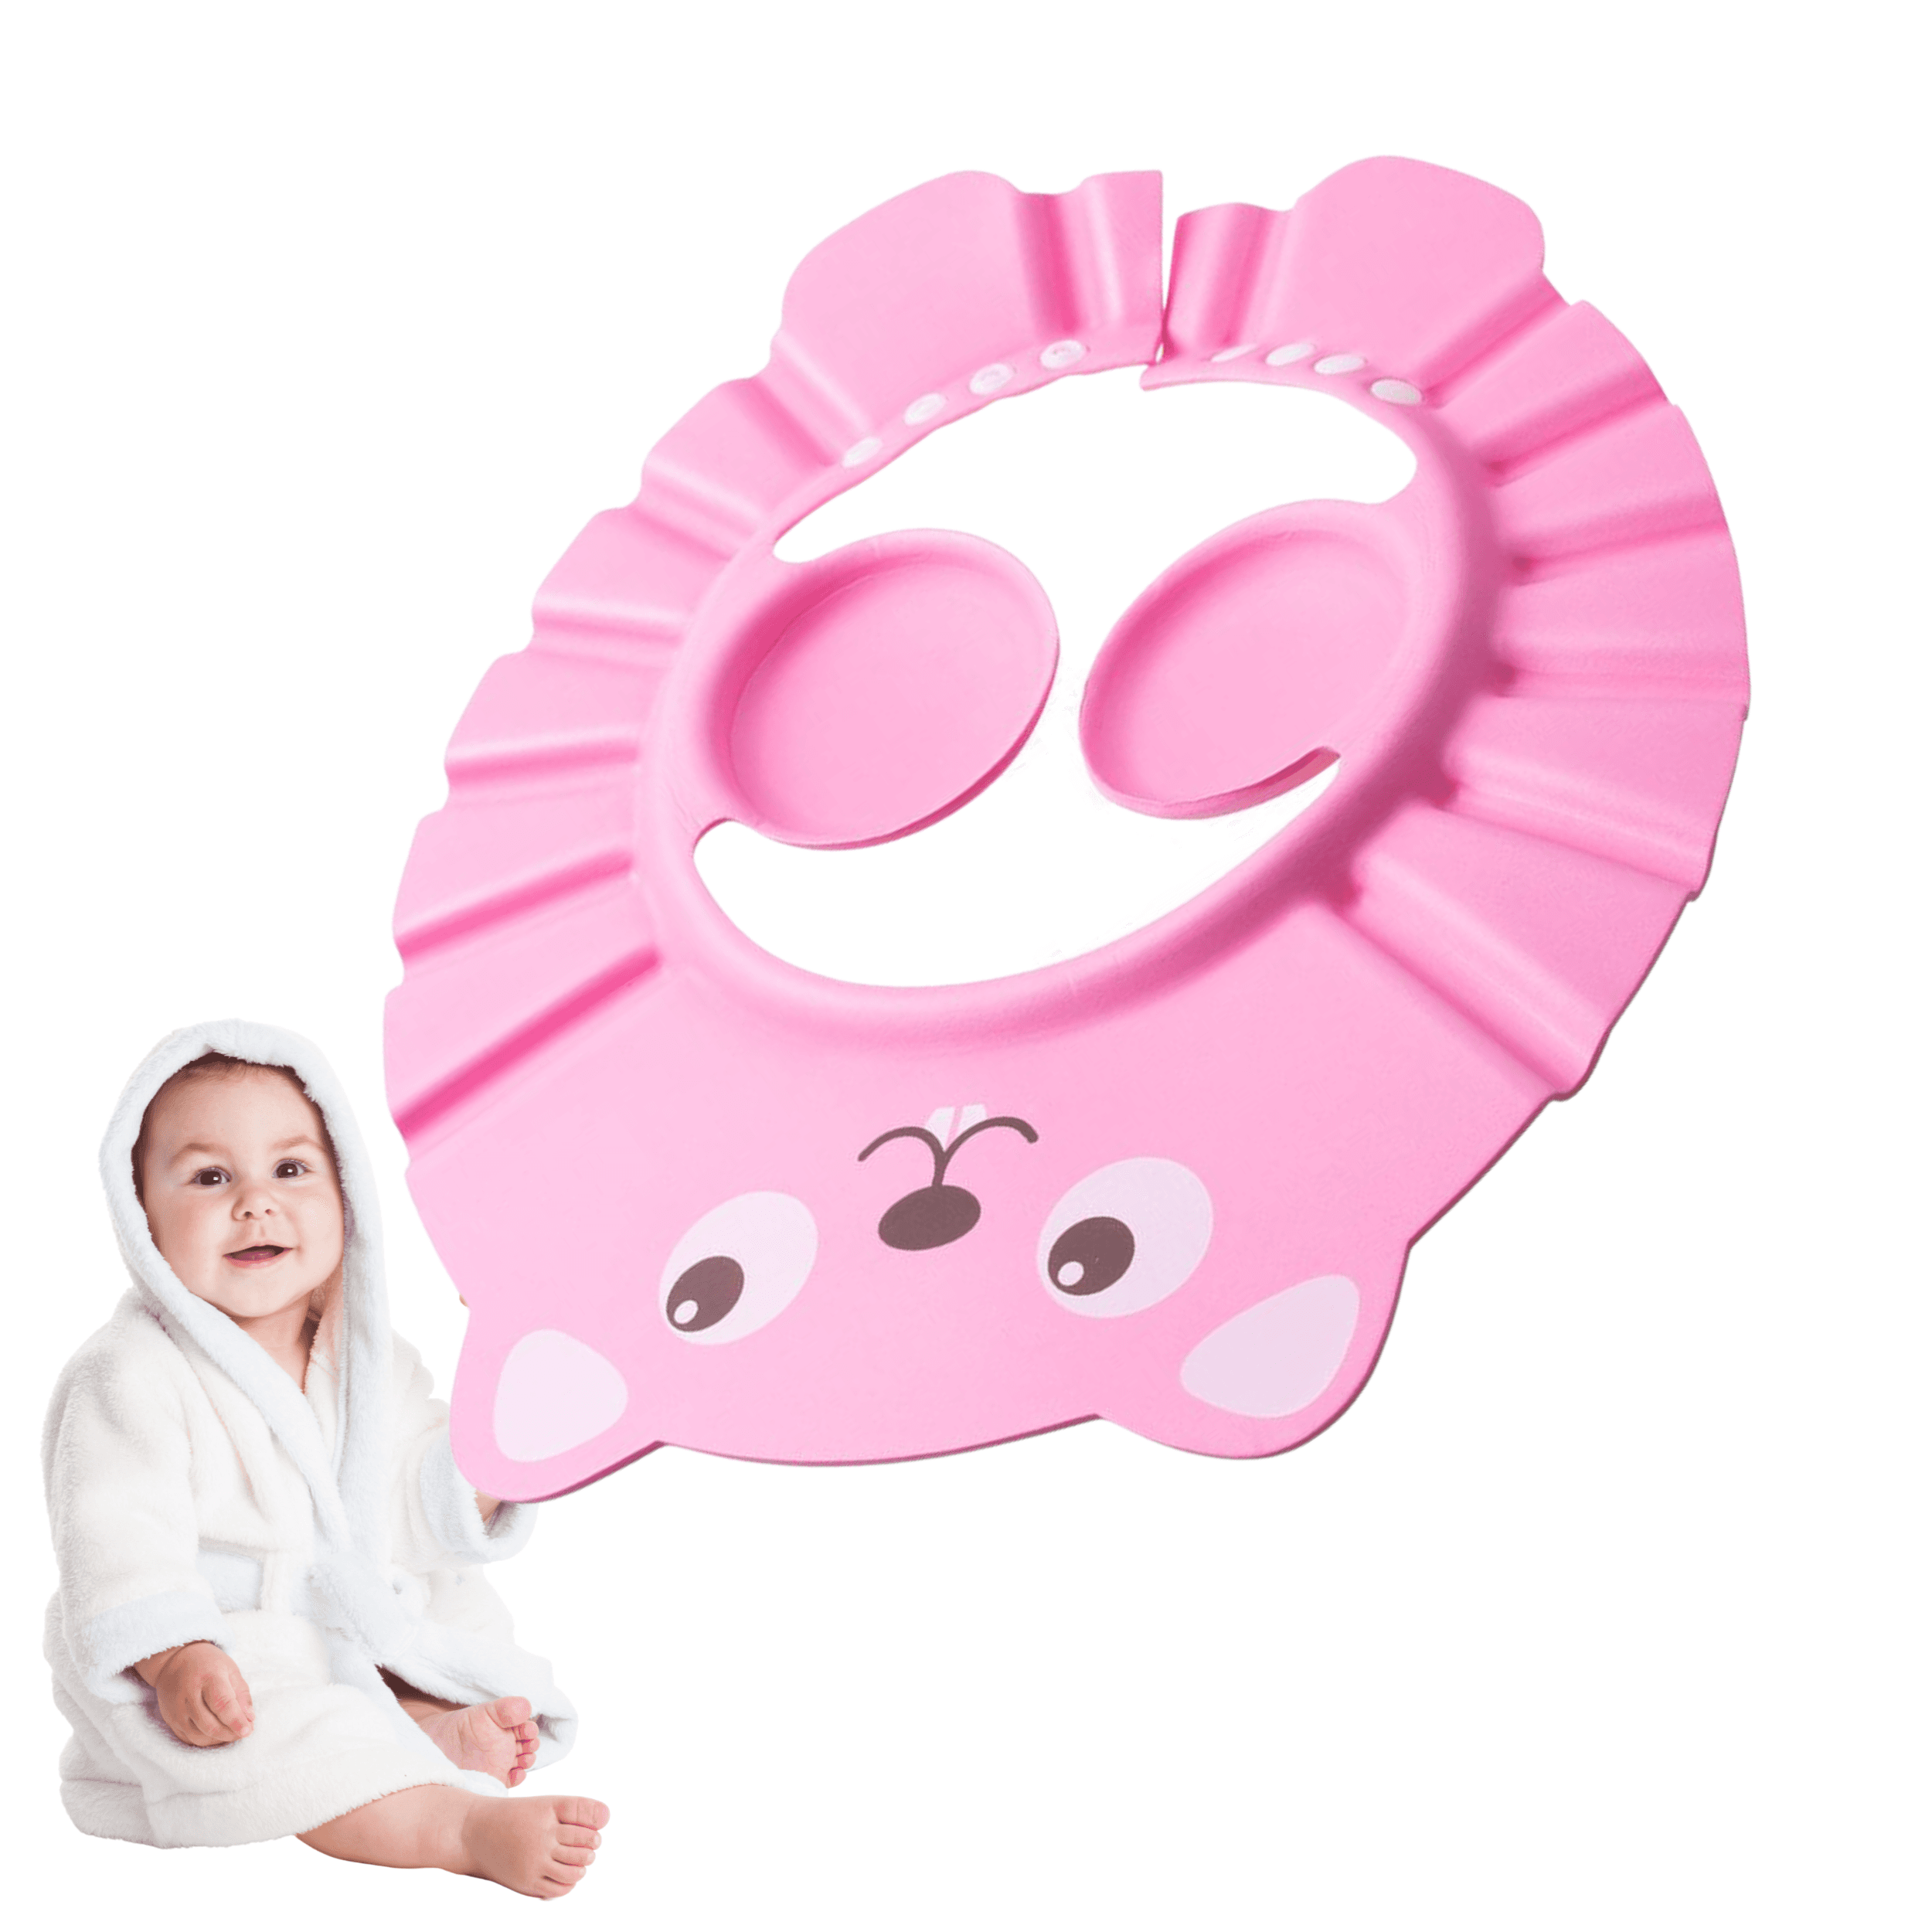 Daszek do mycia głowy dla dzieci/ Rondo kąpielowe - różowy